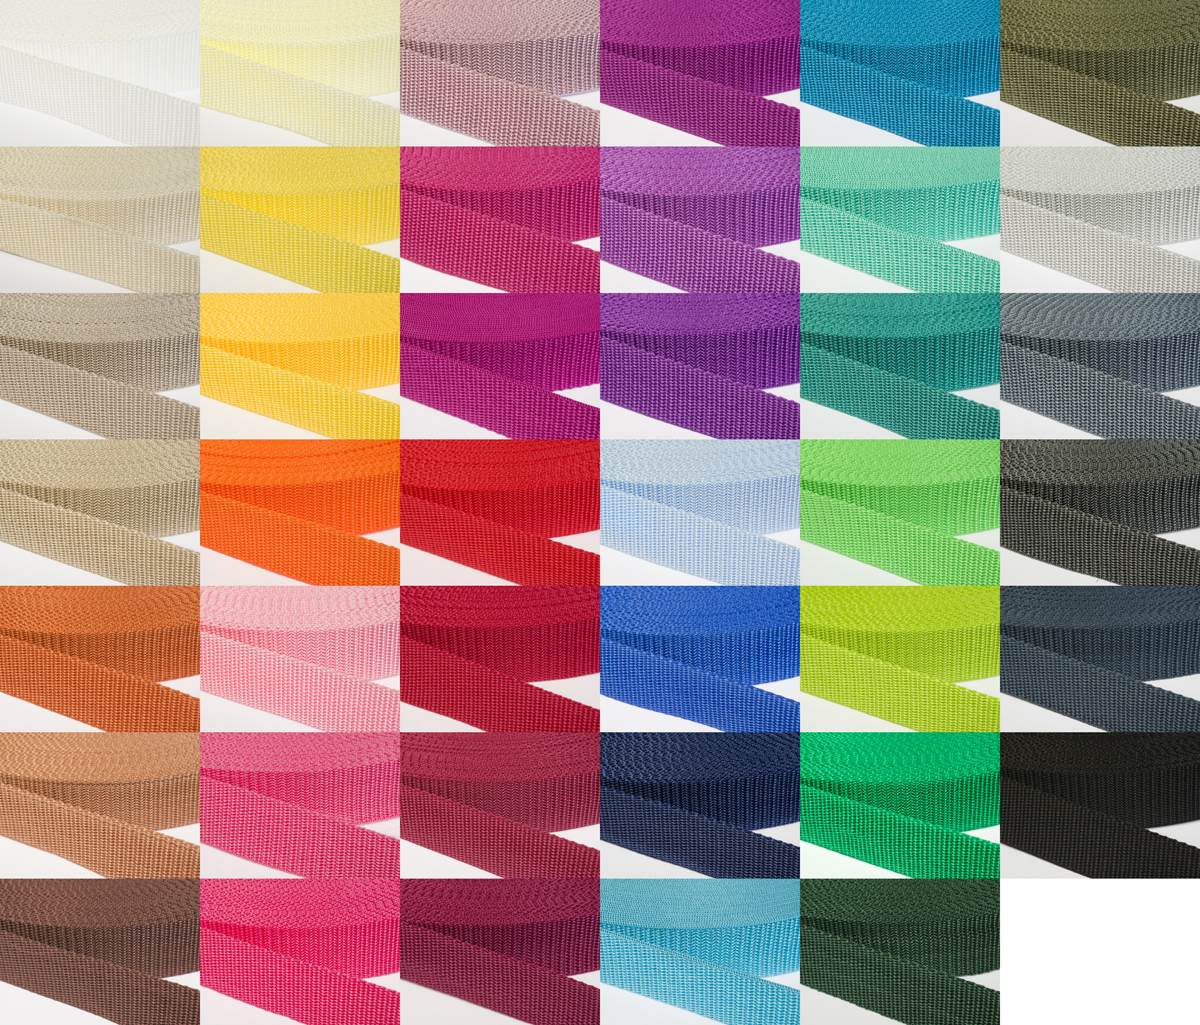 Gurtband 30mm breit aus Polypropylen in 41 Farben 15 - altrosa 6 Meter